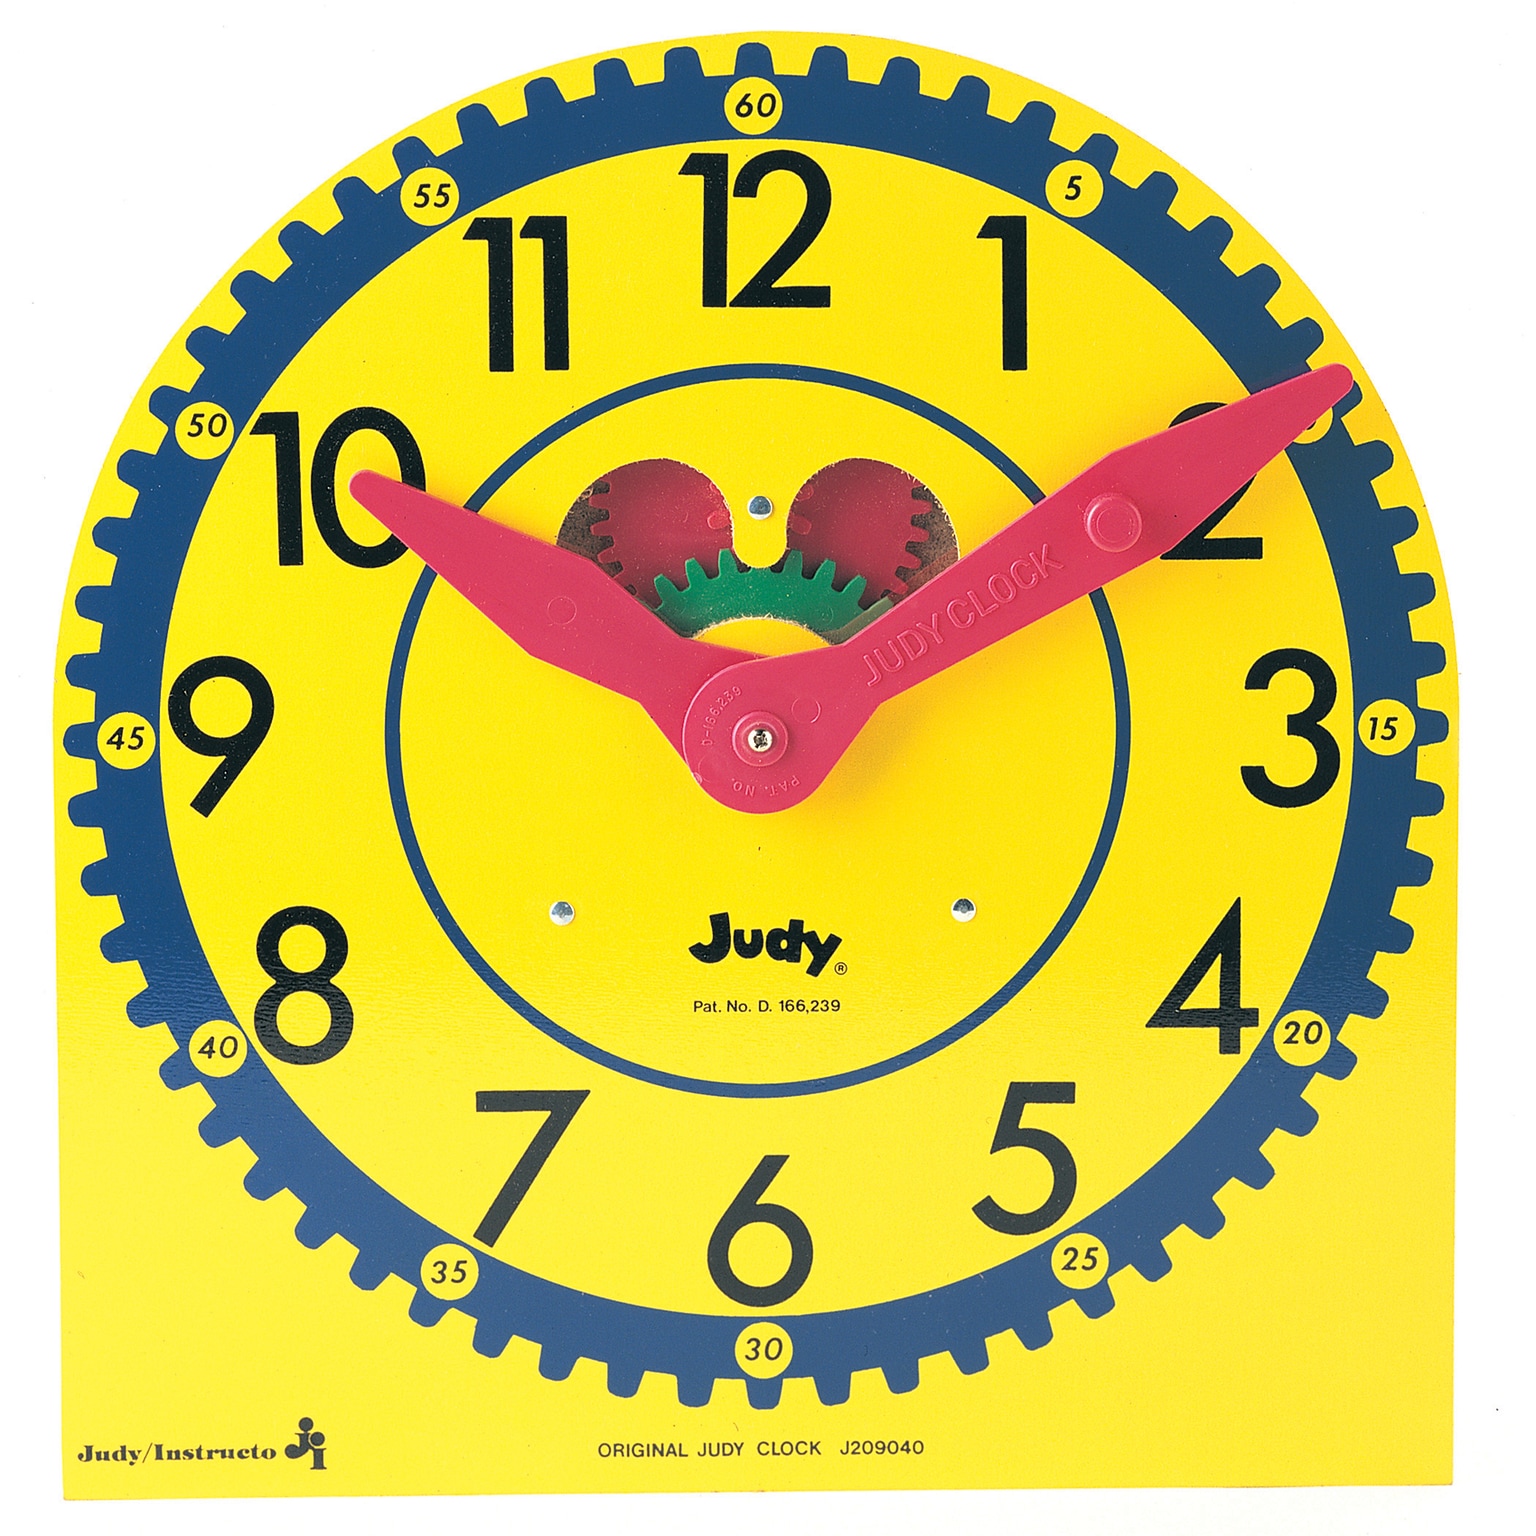 Carson Dellosa Education The Original Judy Clock, Ages 5-9 (J-209040)